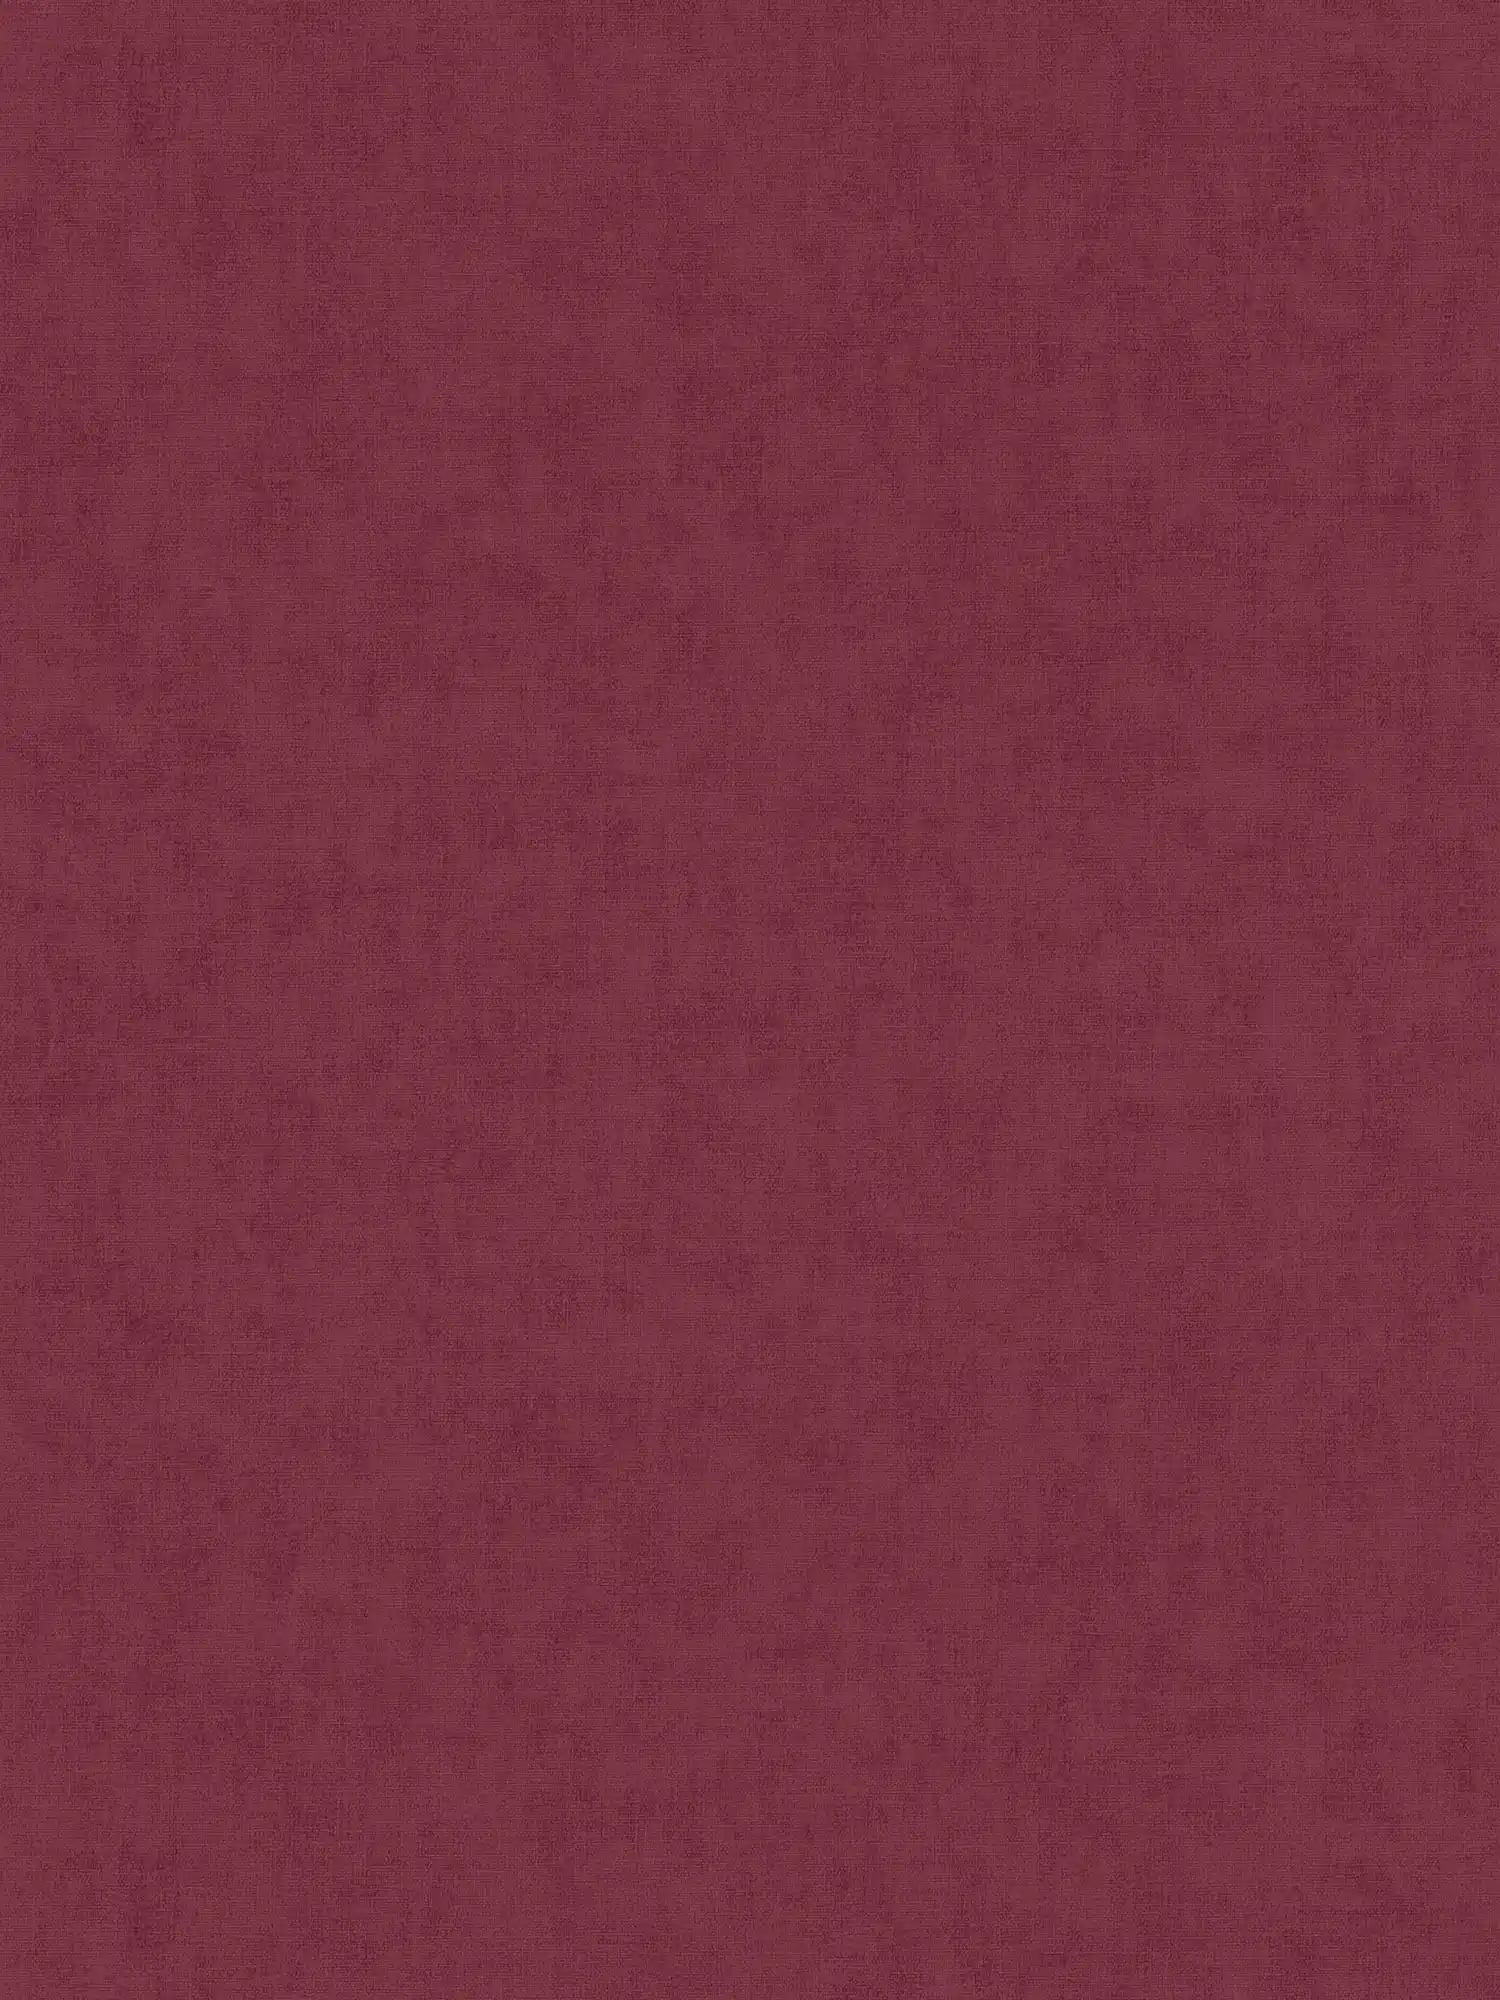 Vliestapete Textil-Optik im Scandinavian Stil - Rot
